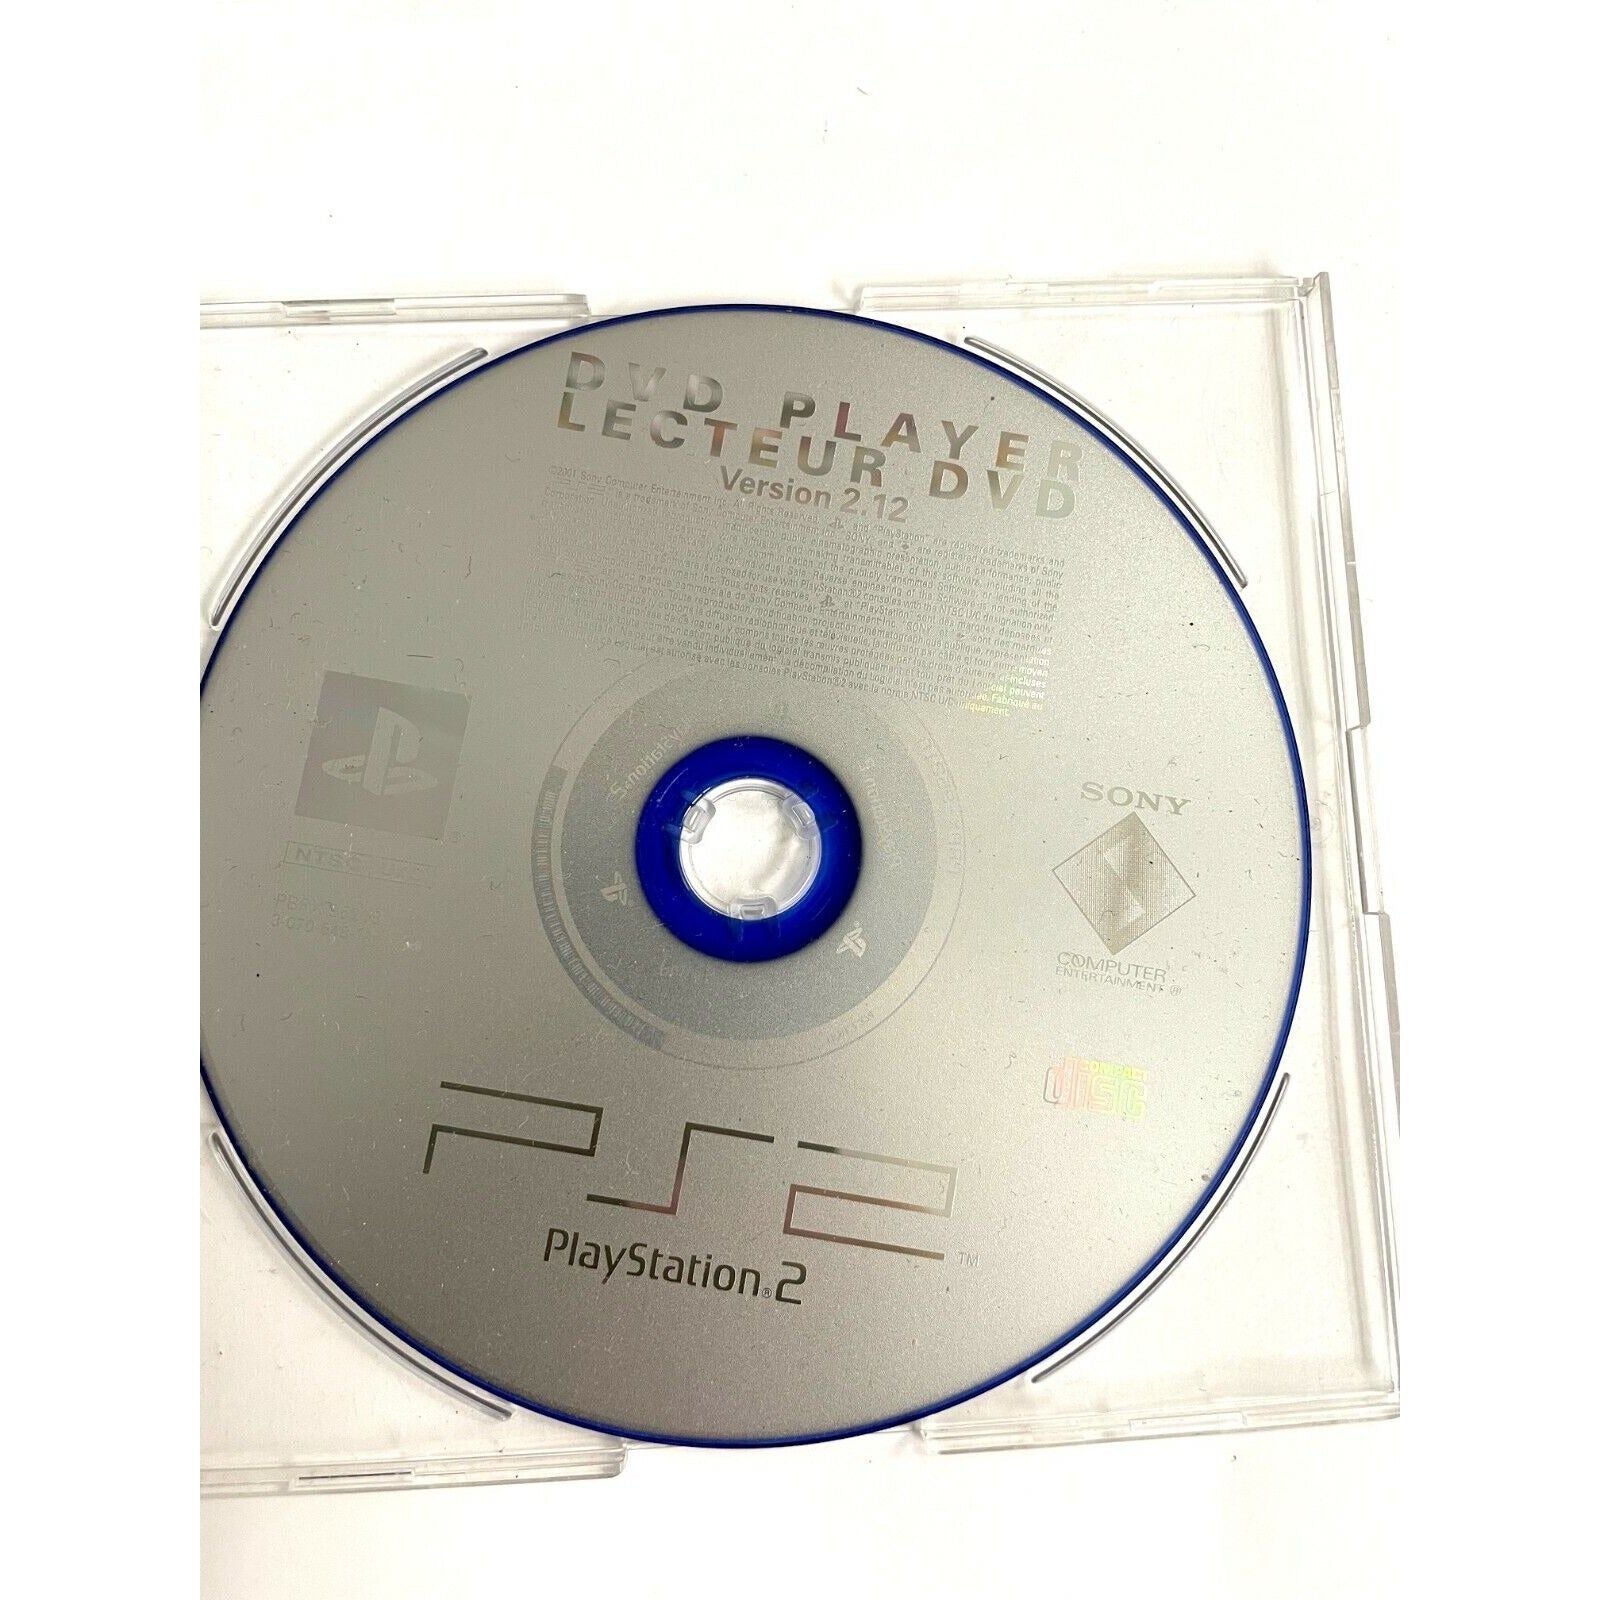 PS2 - Lecteur DVD PlayStation 2 version 2.12